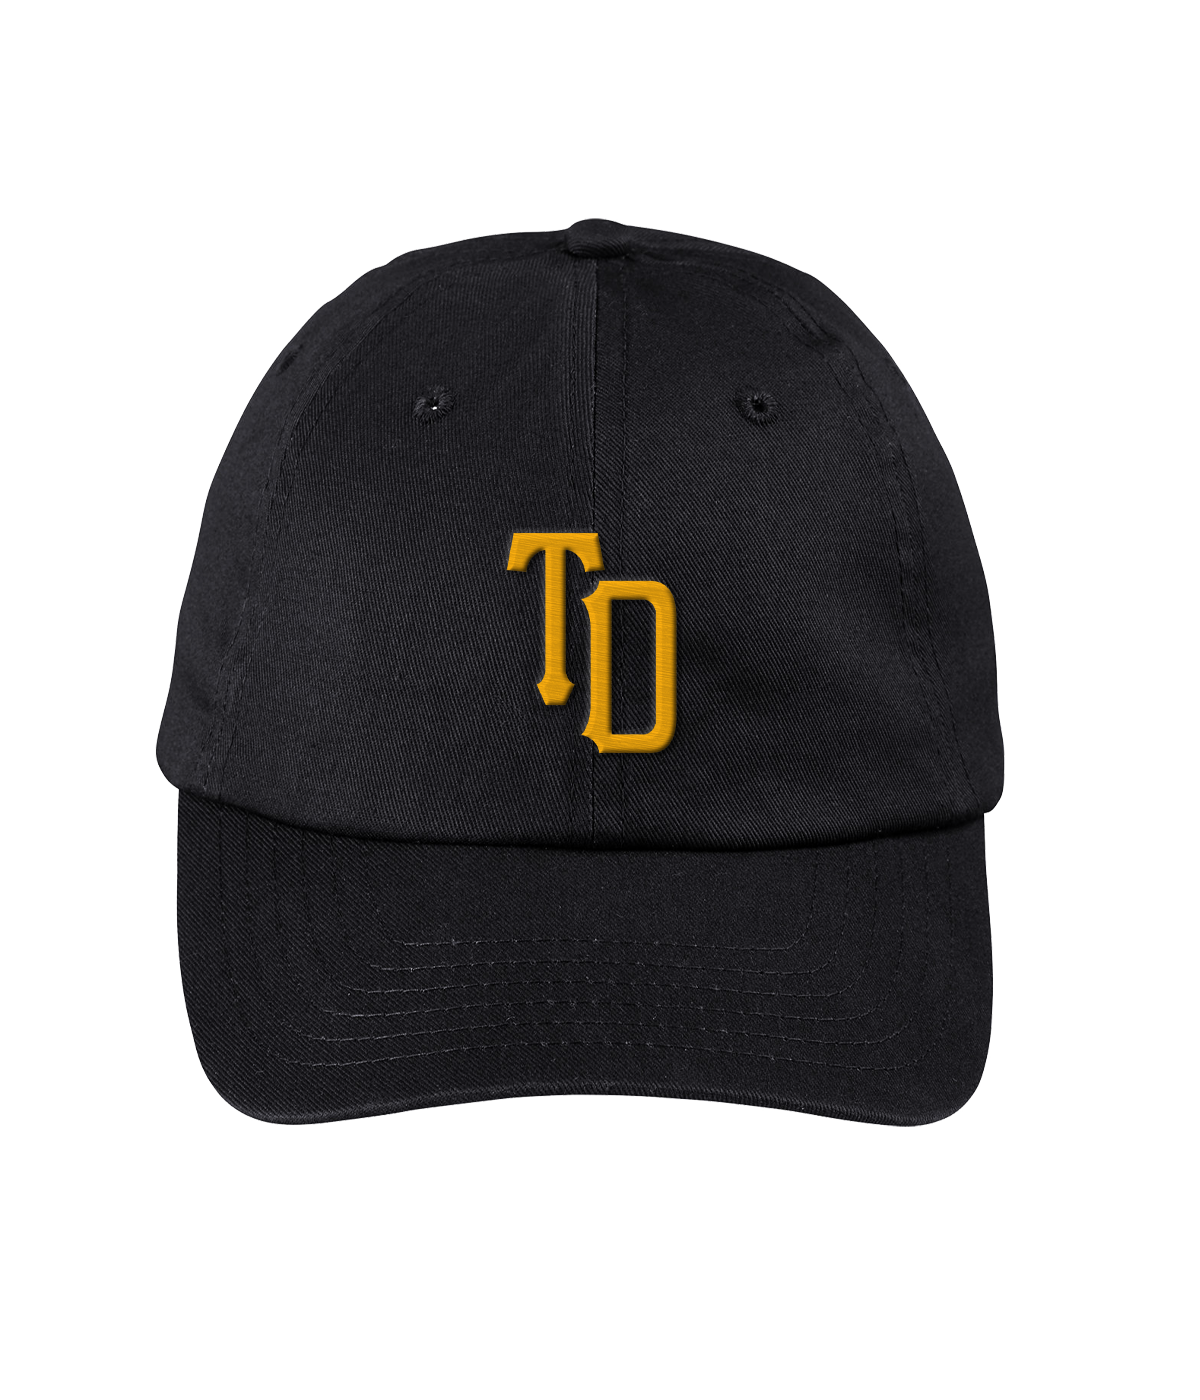 Tony Deppen - TD Dad Hat